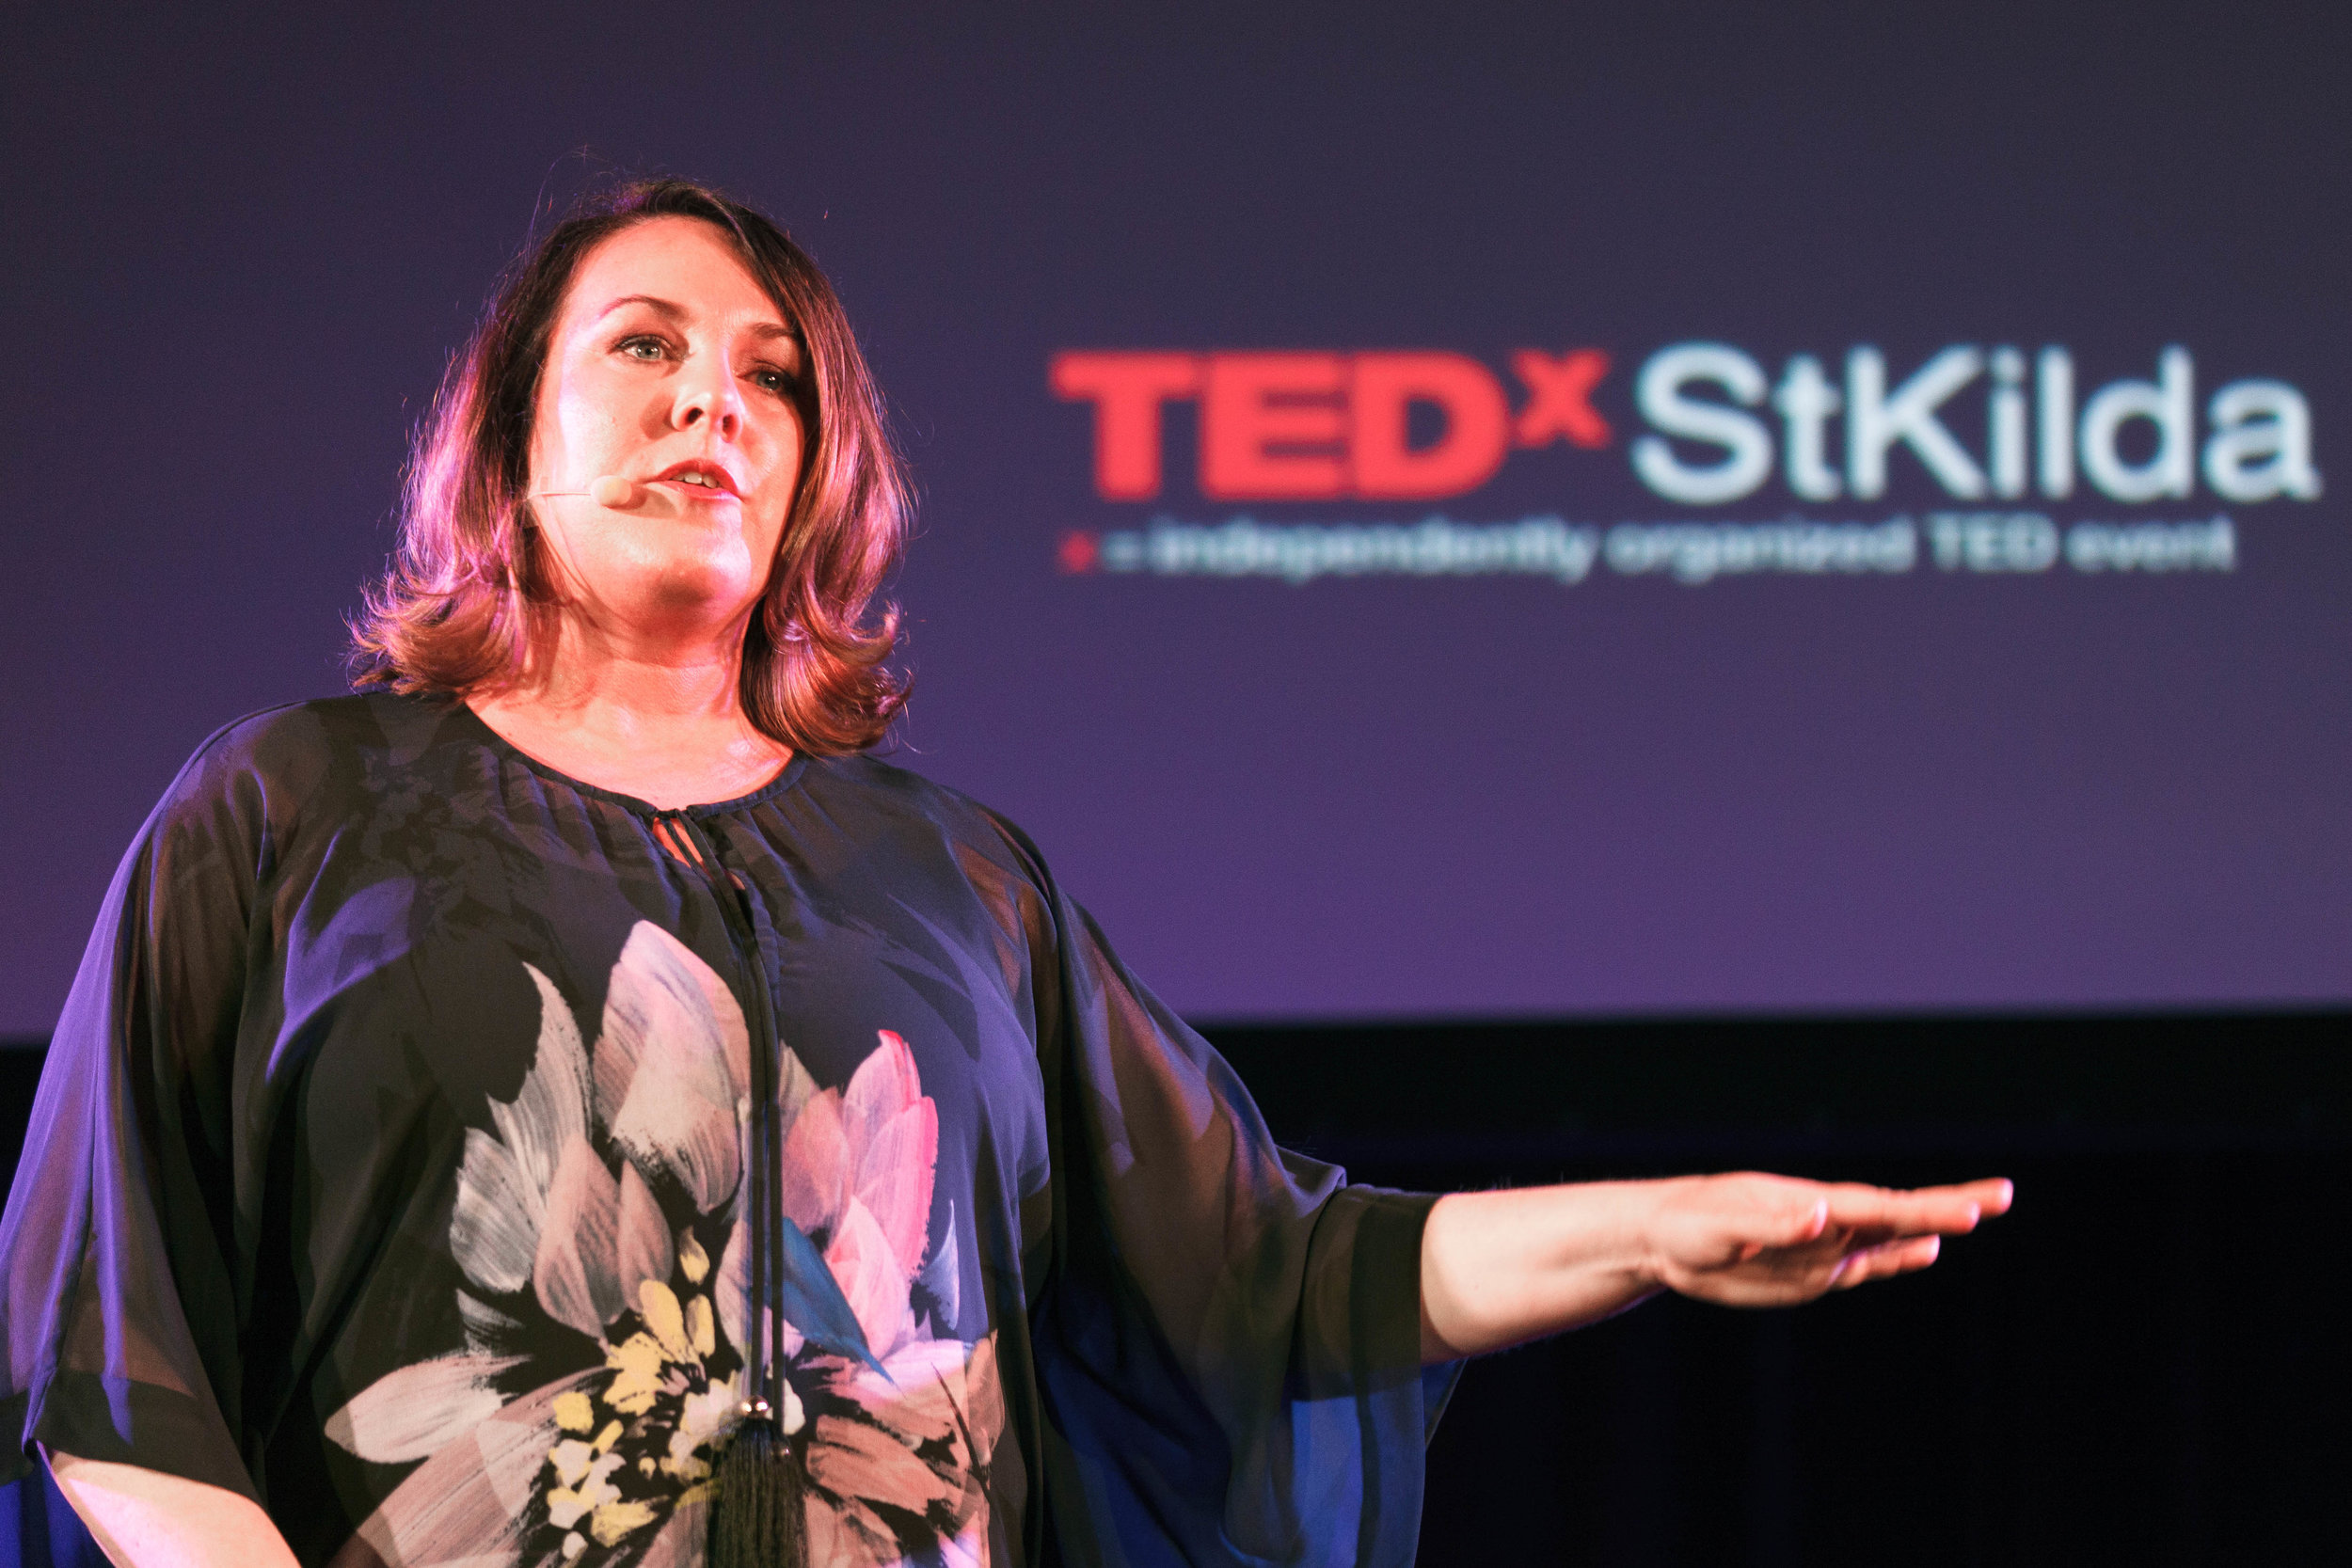 TEDxStkilda_Sonya Stattmann_SG76.jpg